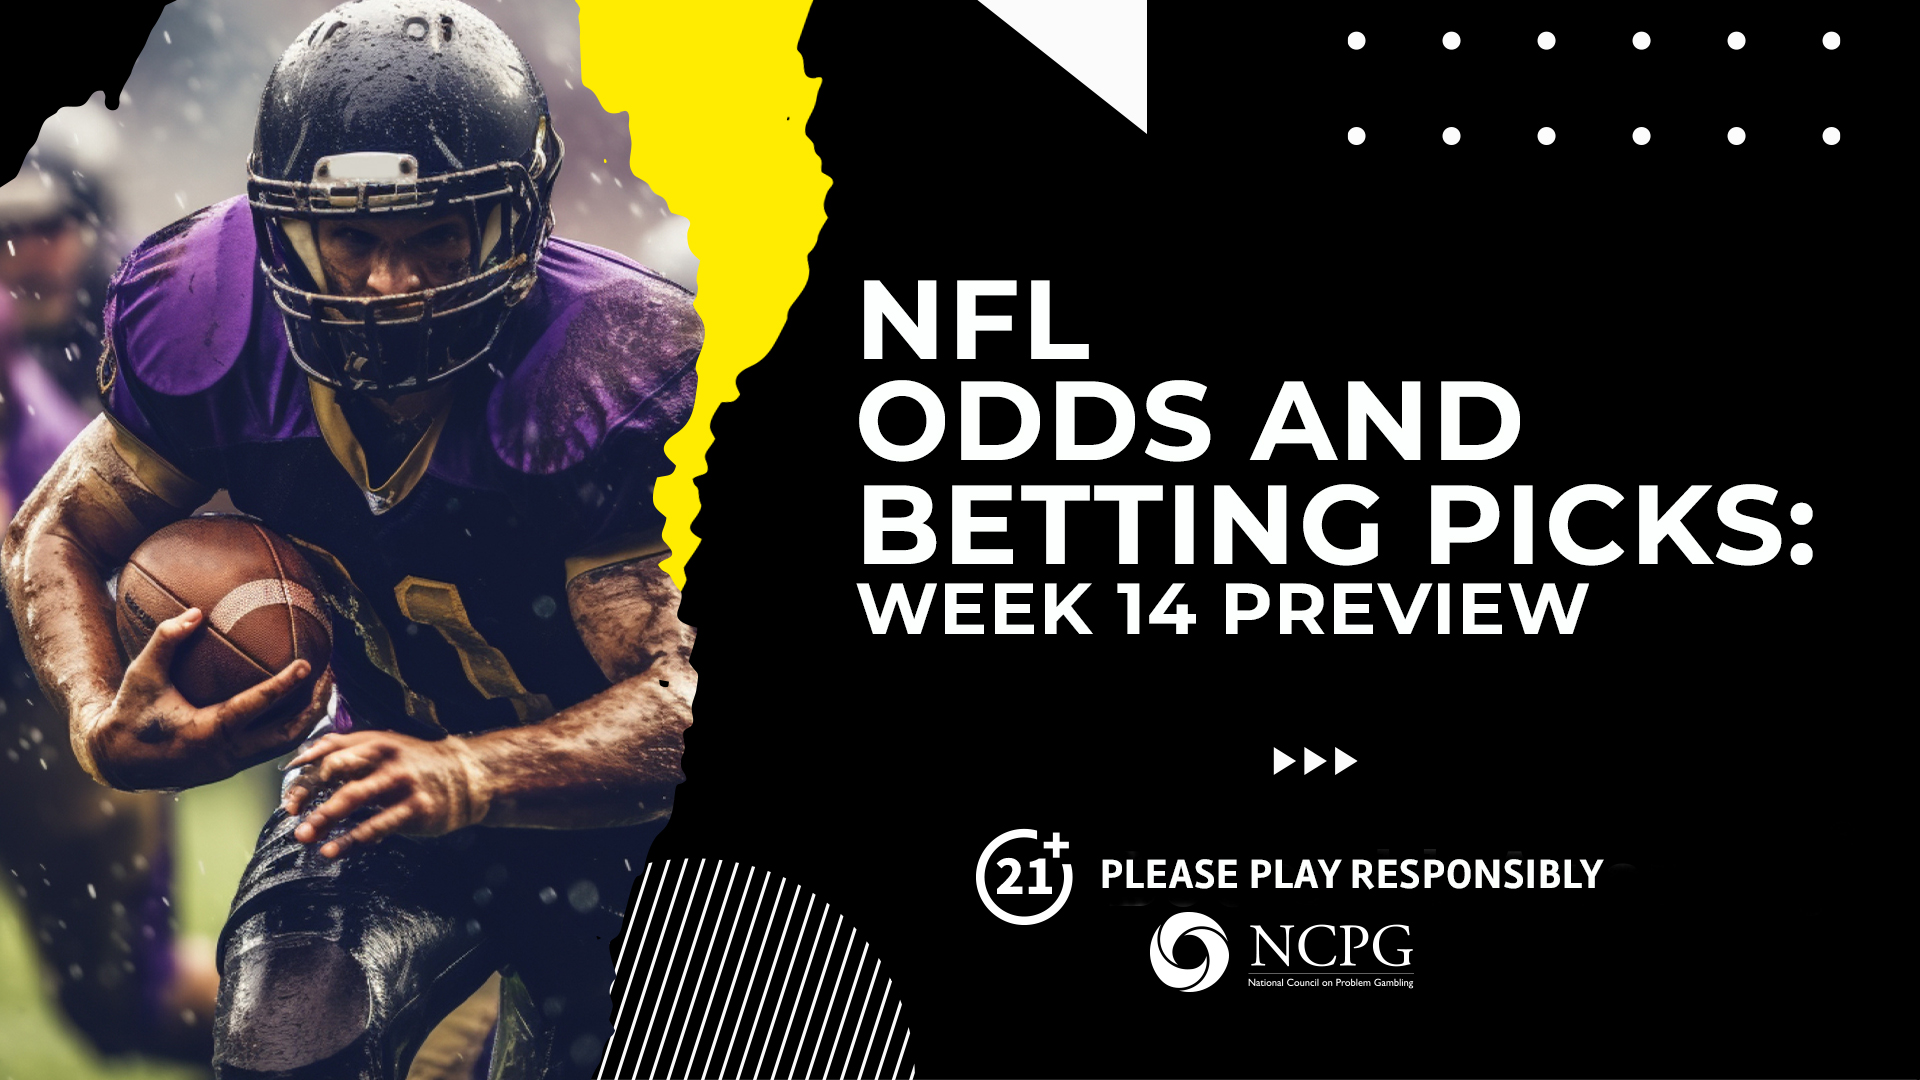 Photo: nfl odds week 14